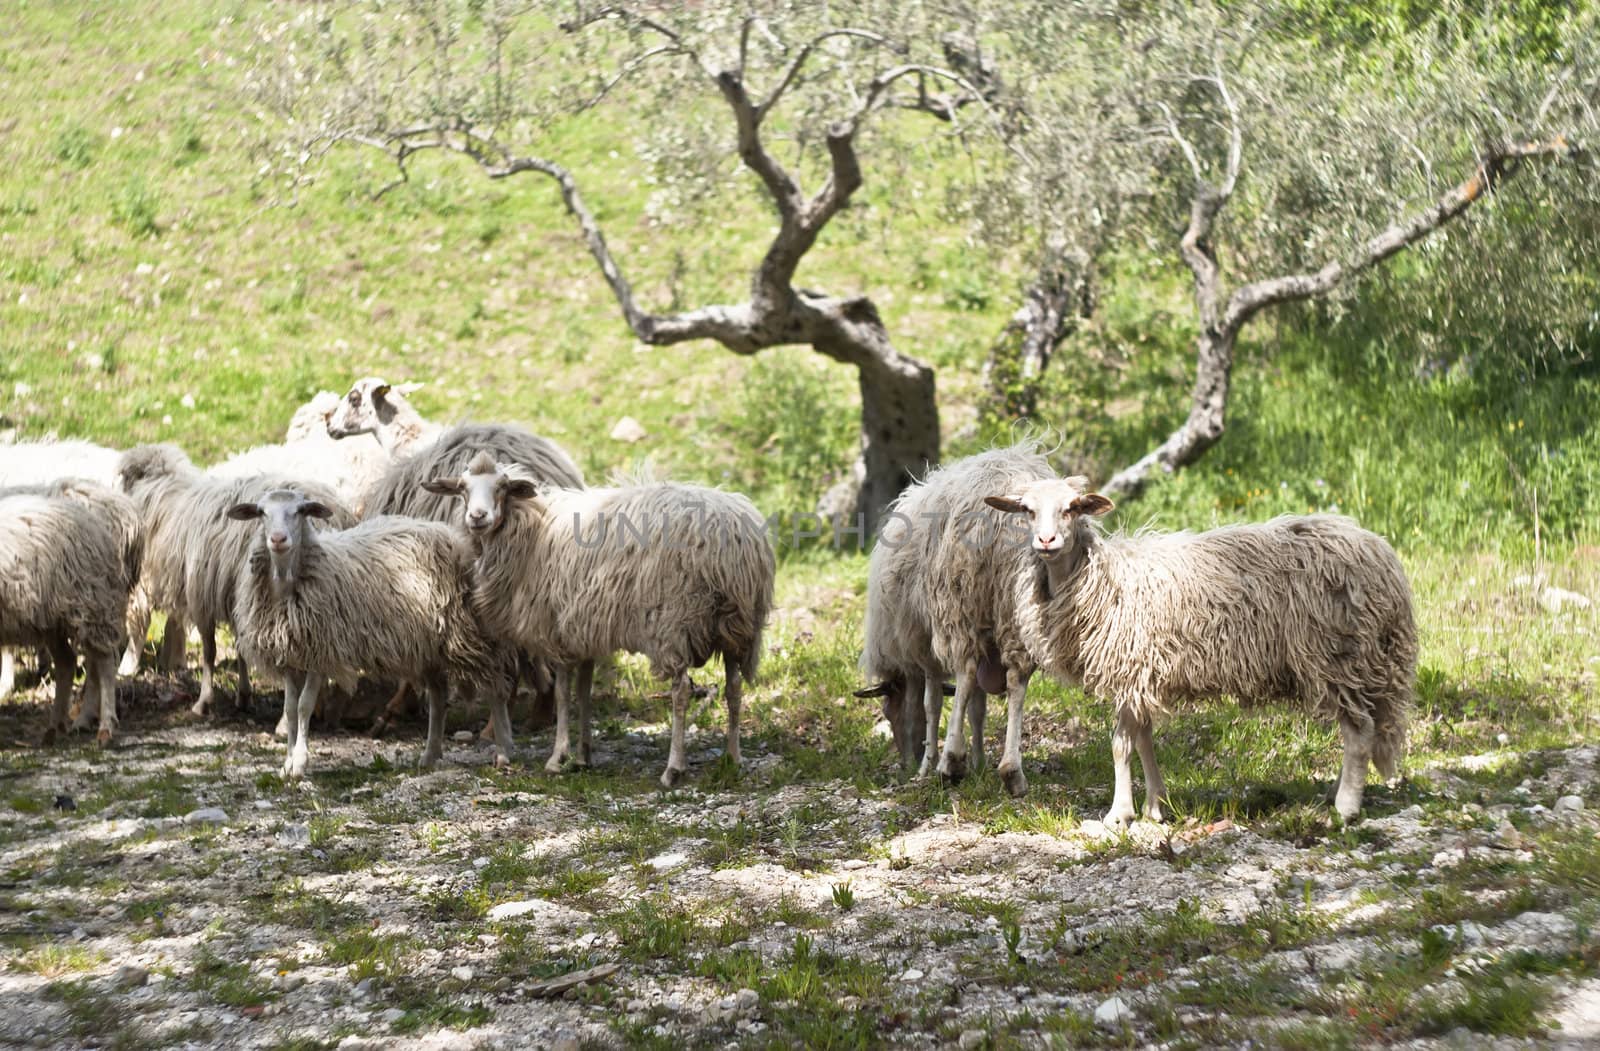 Sheep on the sicilian farm by gandolfocannatella